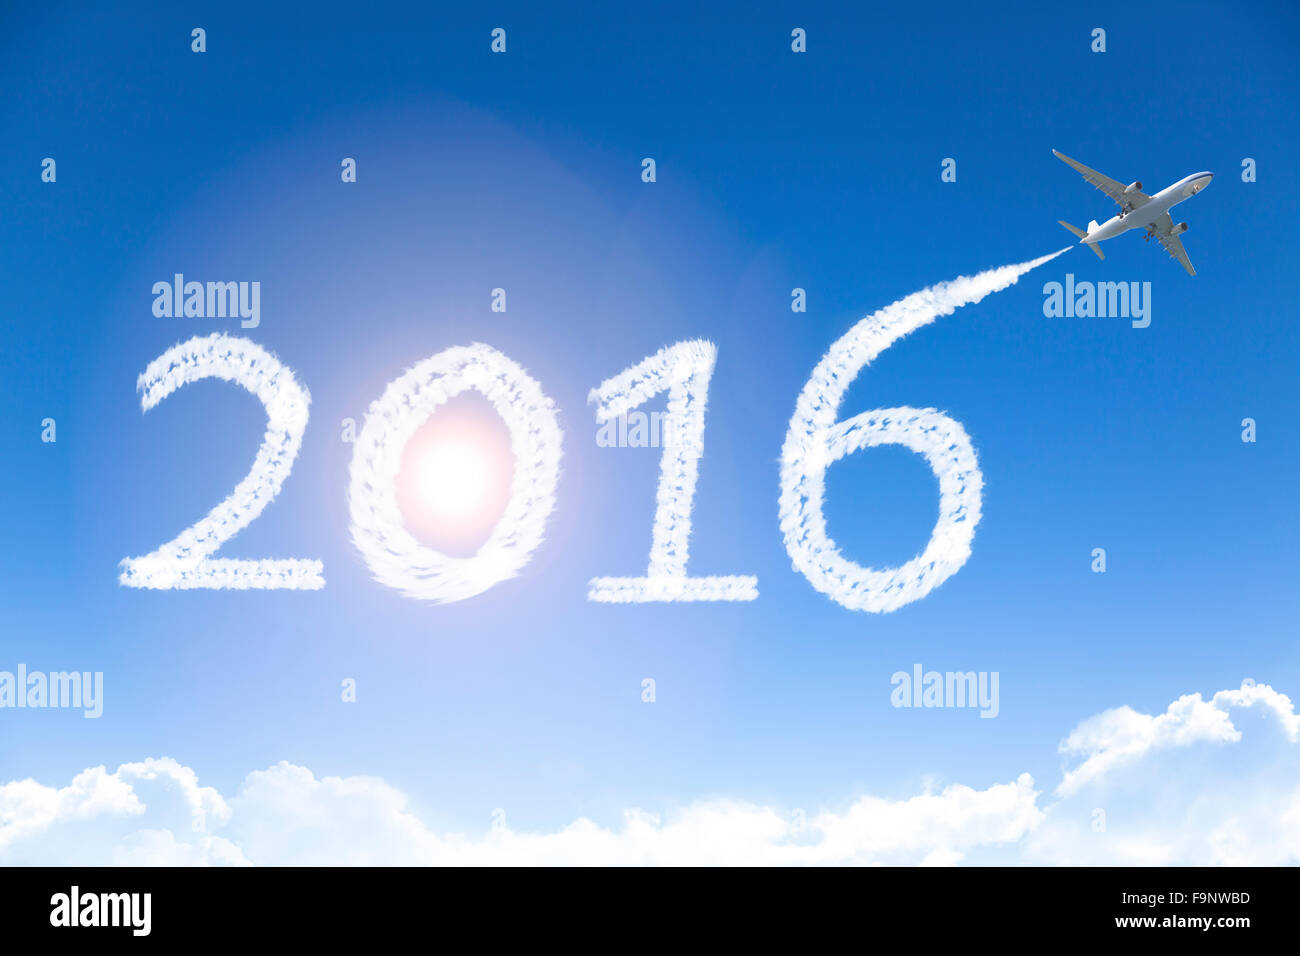 Felice anno nuovo 2016 disegno in aereo nel cielo Foto Stock